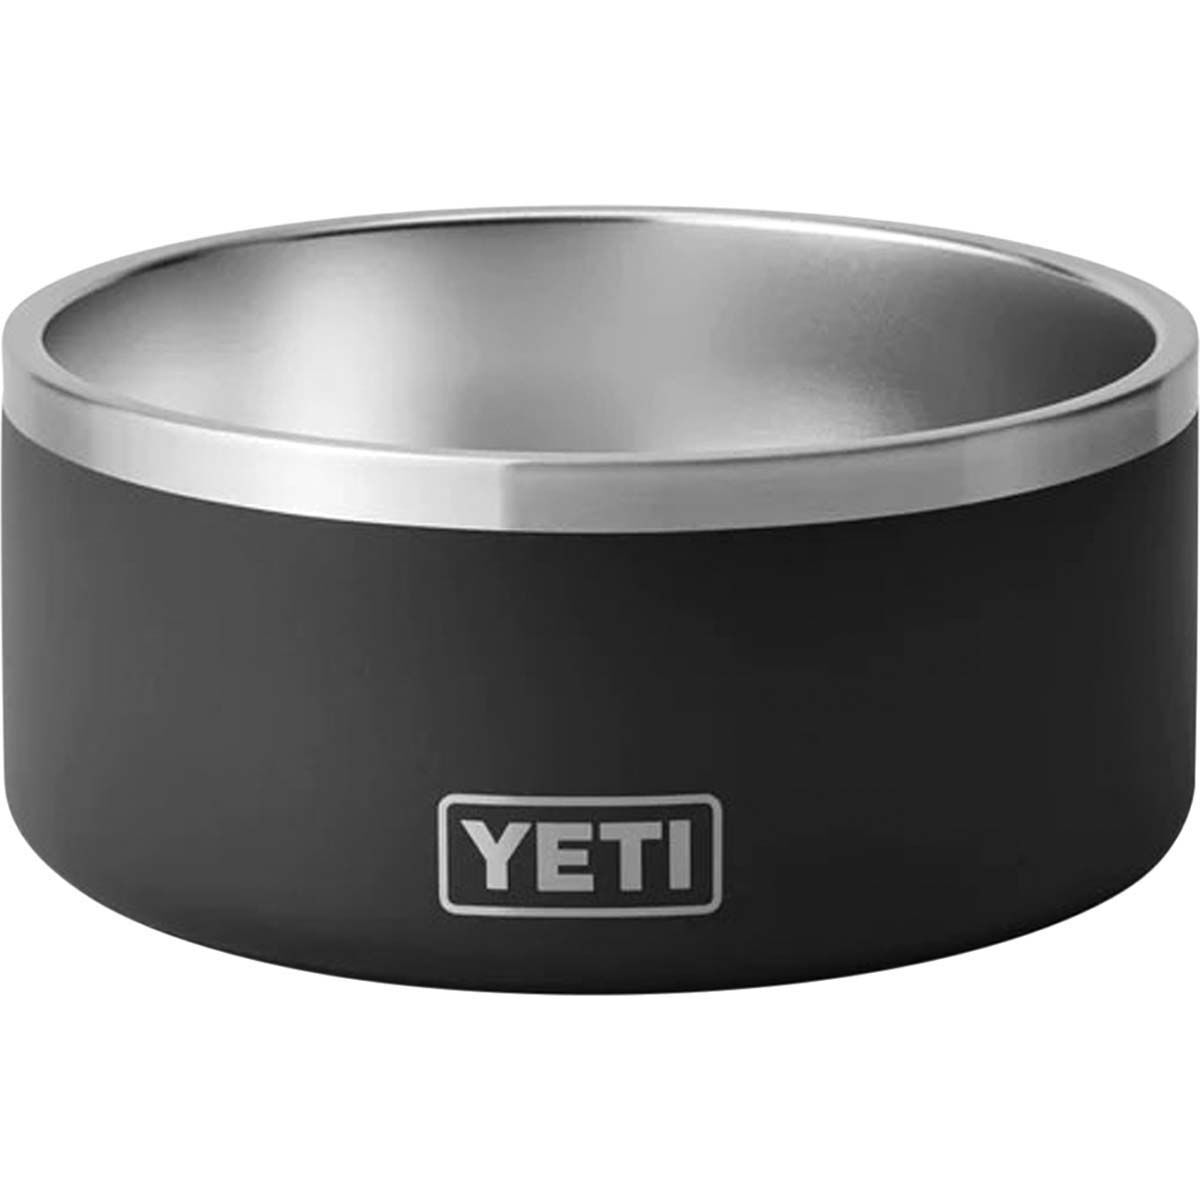 YETI Boomer™ 8 Dog Bowl Black, Black, bcf_hi-res